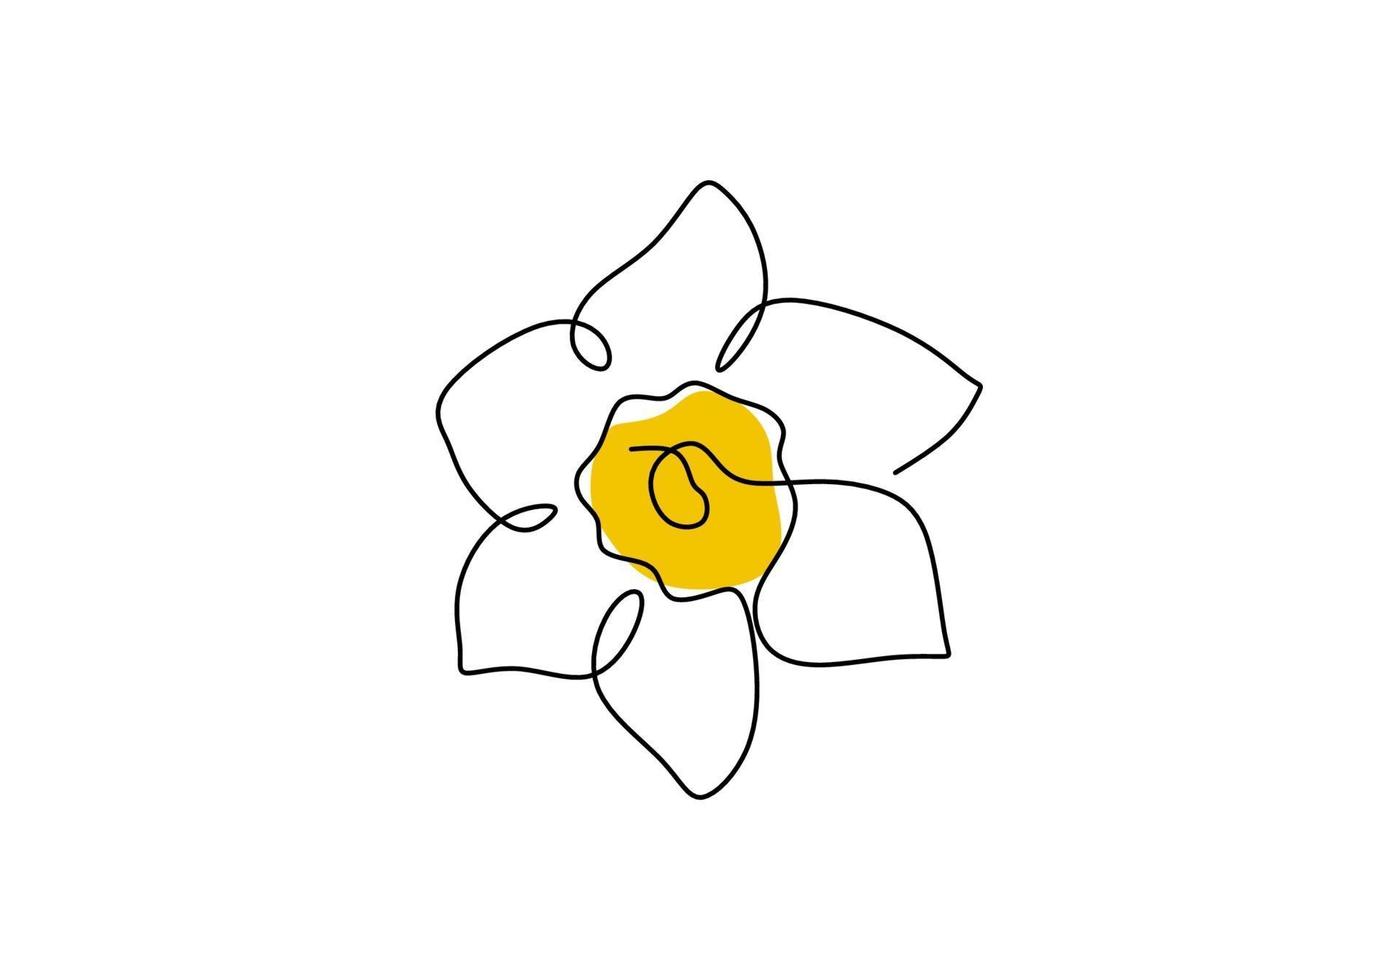 narcisbloem in gele kleur ononderbroken lijntekening. bloeiende narcissen in het voorjaar geïsoleerd op een witte achtergrond. tuinbloem met minimalistisch ontwerp in handgetekende stijl. vector illustratie